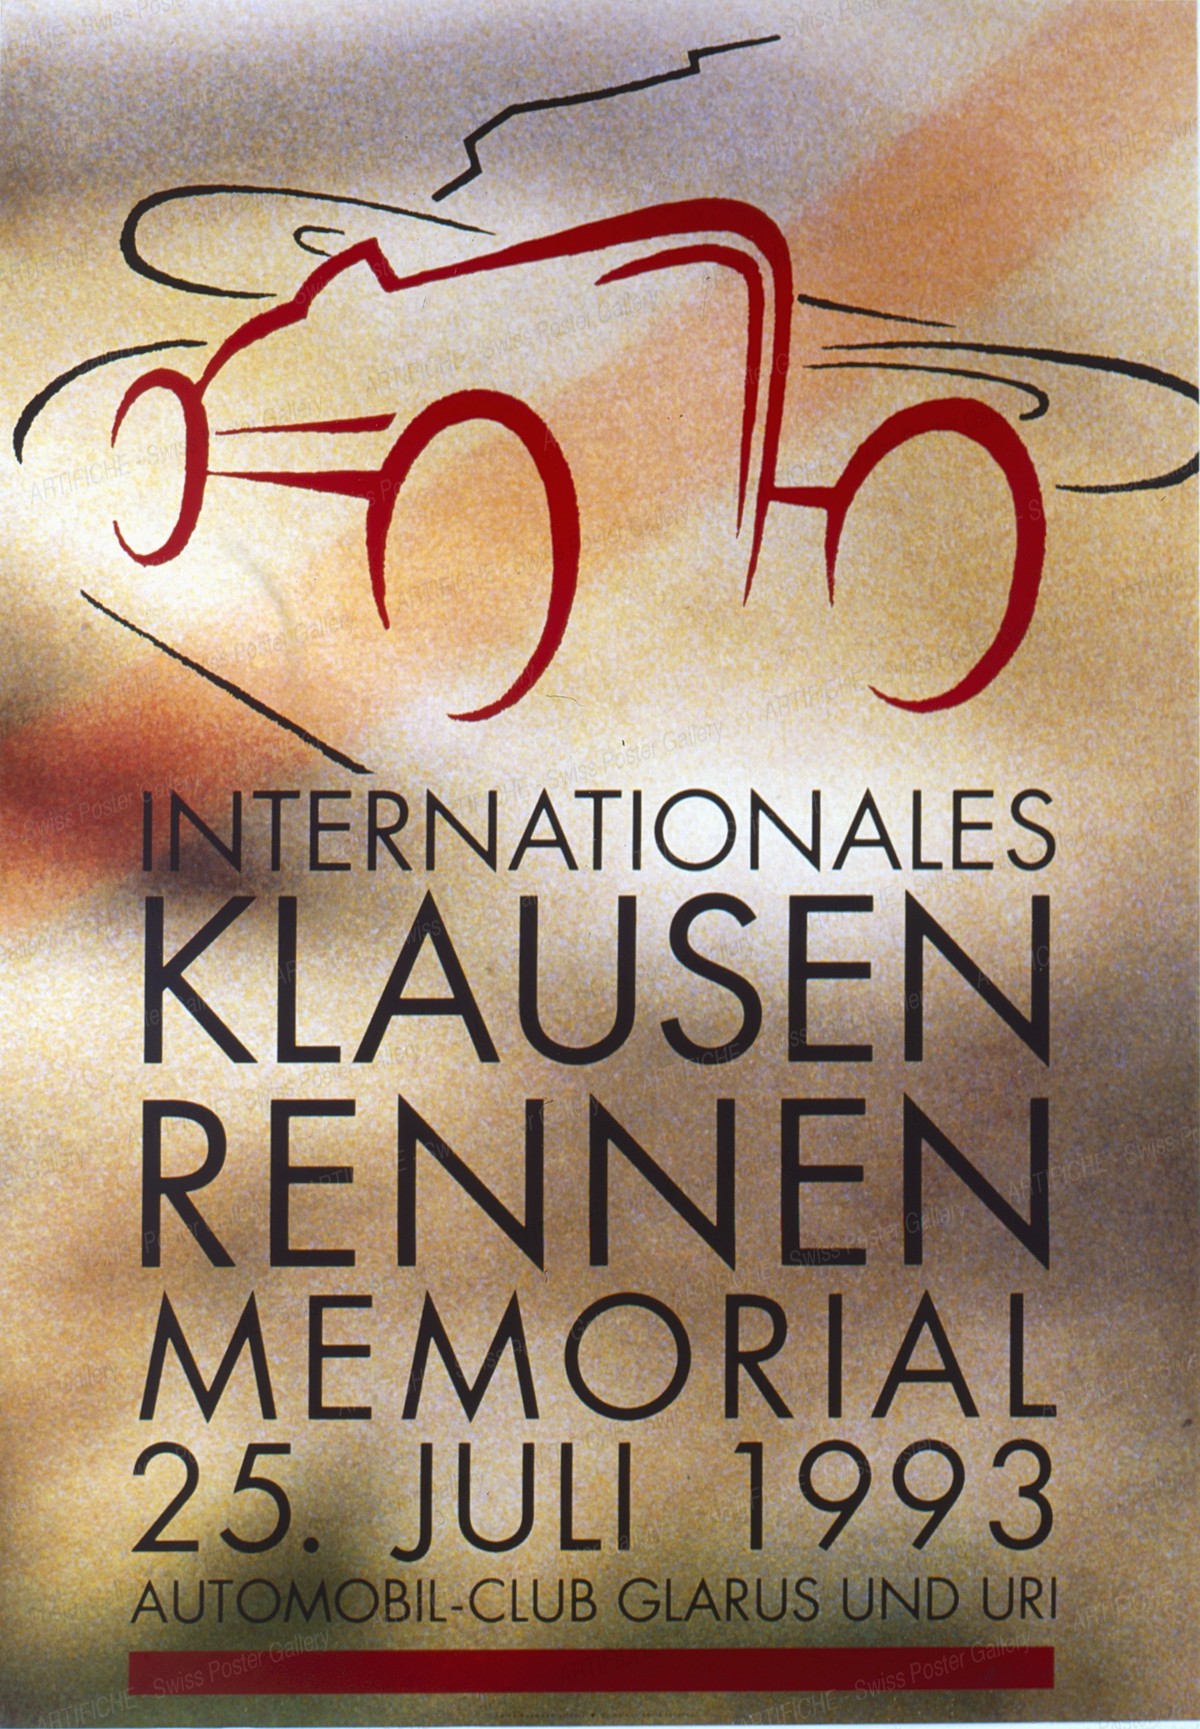 Internationales Klausen-Rennen – Memorial 1993 / Automobilclub Glarus und Uri, Heinz Baumann